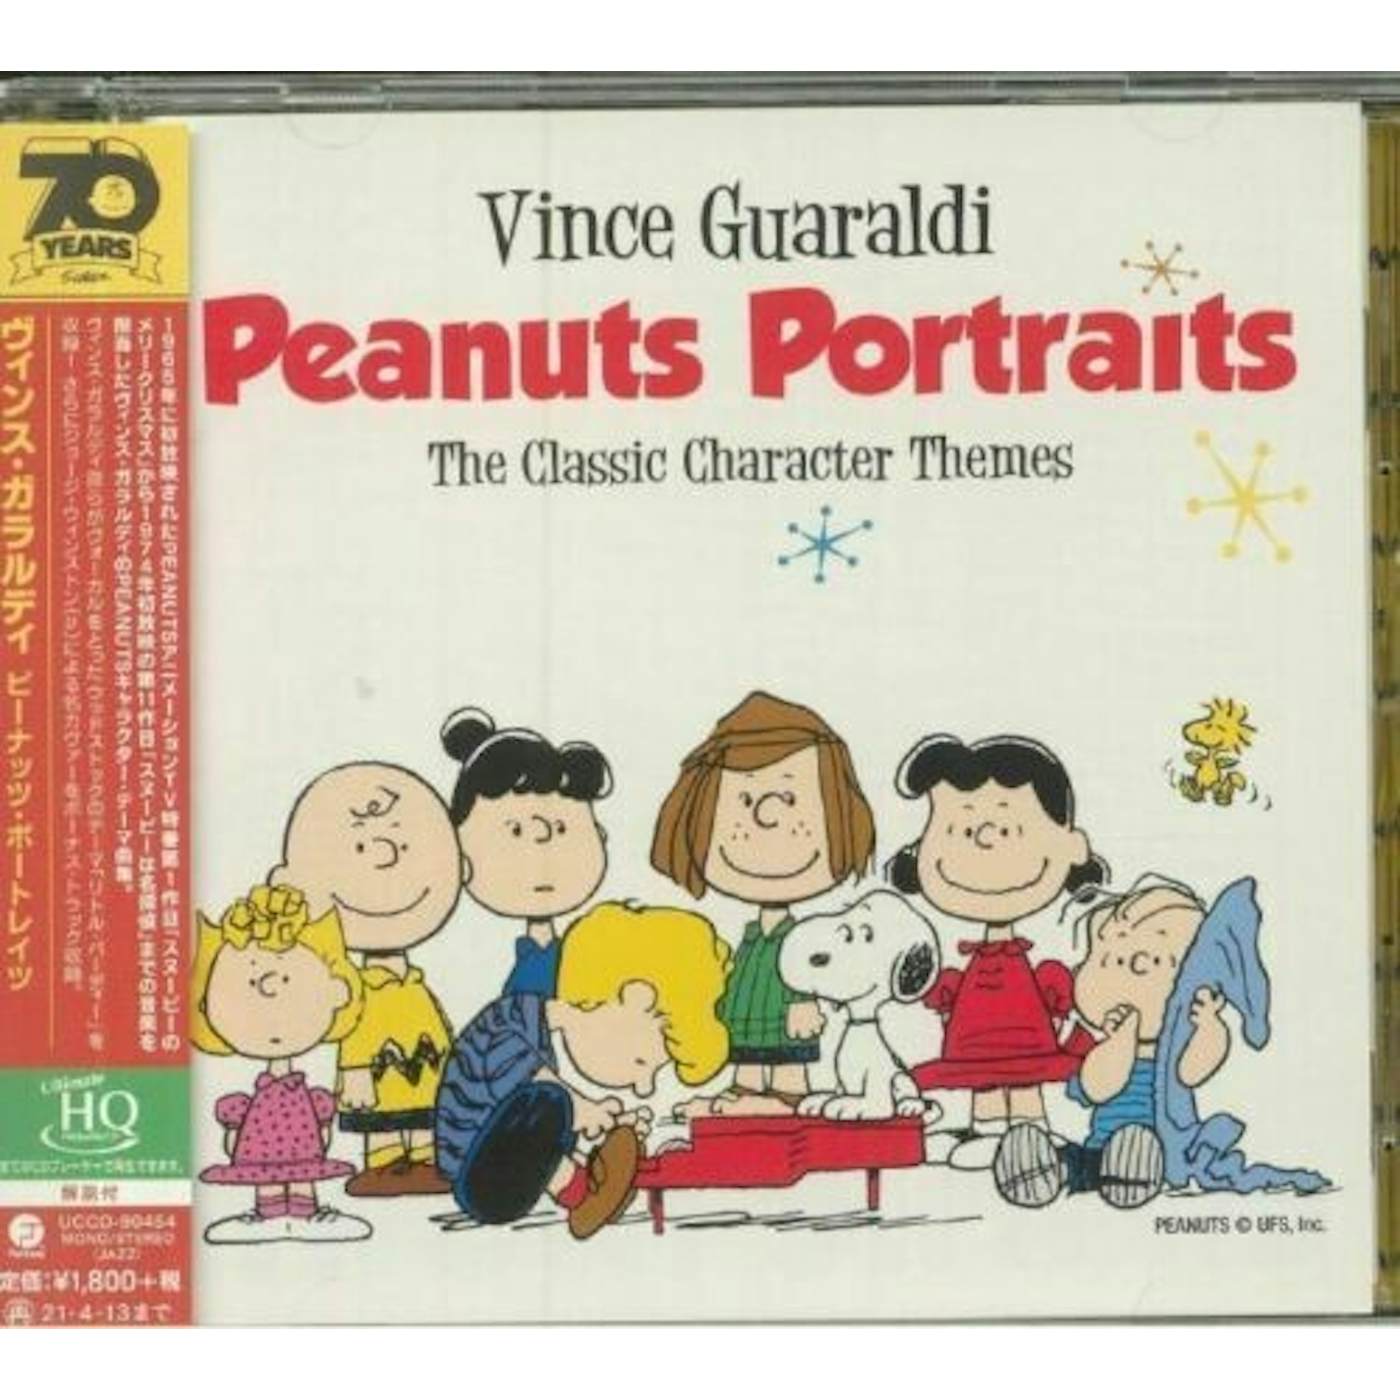 Vince Guaraldi PEANUTS PORTRAITS CD